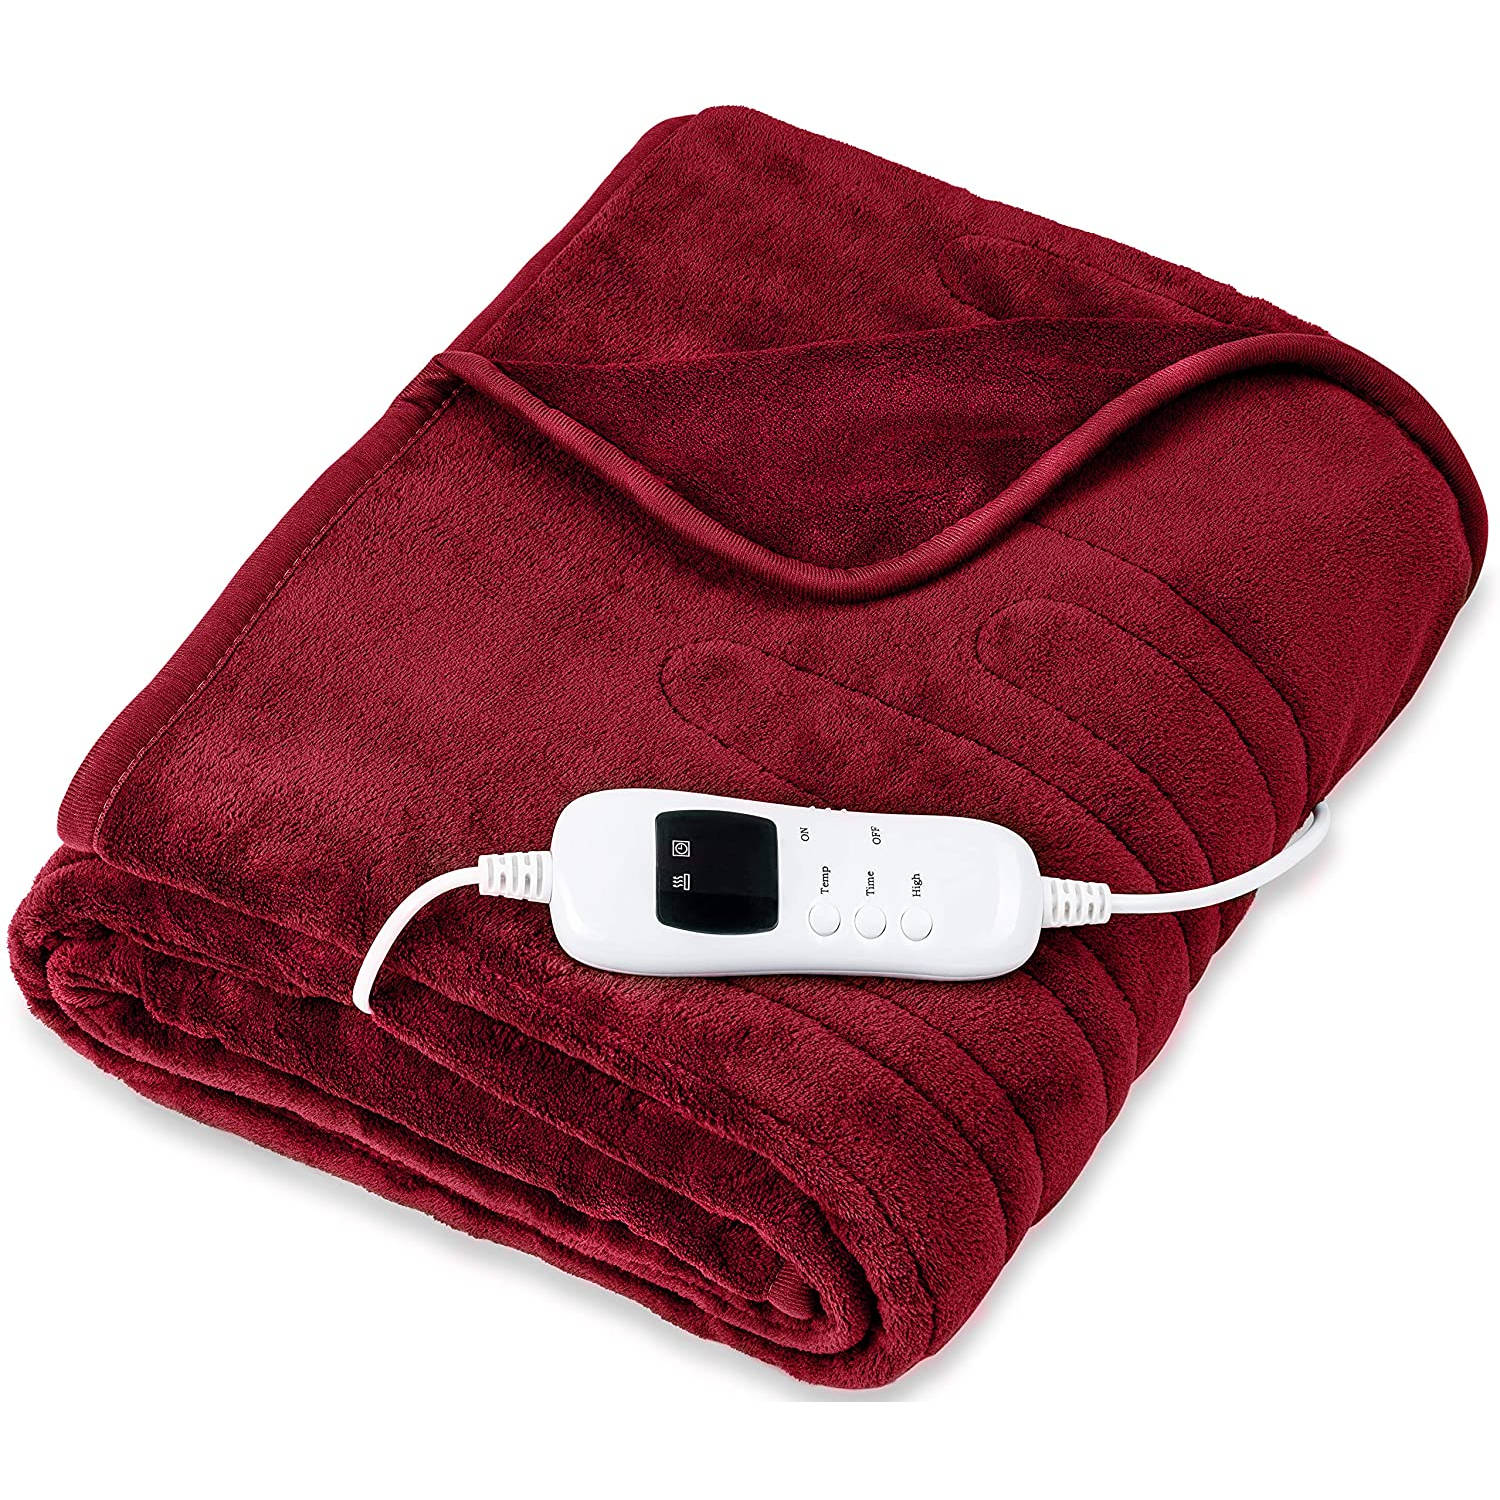 Sinnlein- Elektrische deken van pluche, 180 x 130 cm, wijnrood, TÜV SÜD GS getest, elektrische warmt